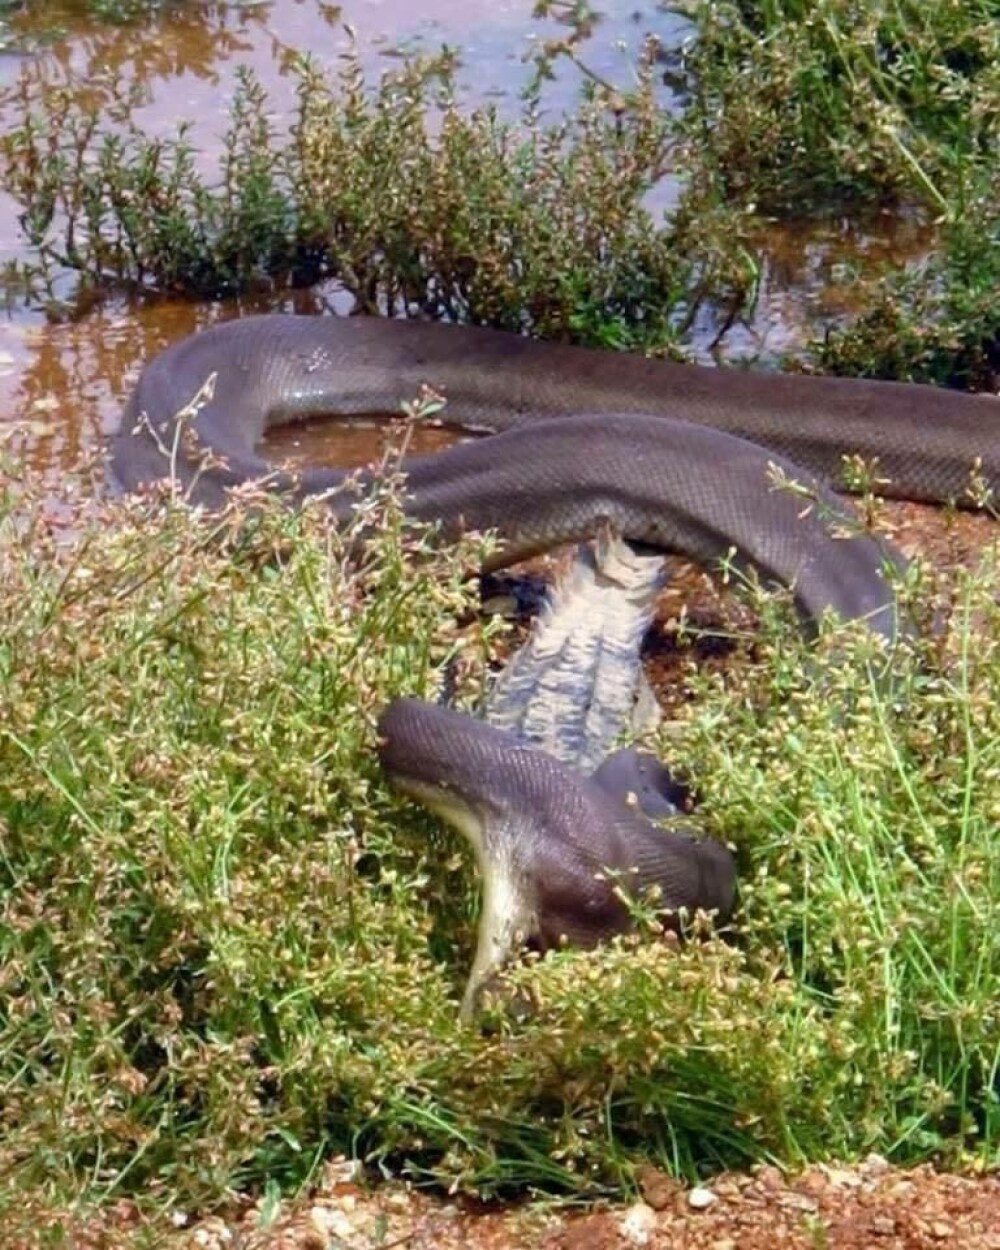 Imagini uluitoare surprinse în Australia: crocodil înghițit de un piton. GALERIE FOTO - Imaginea 7